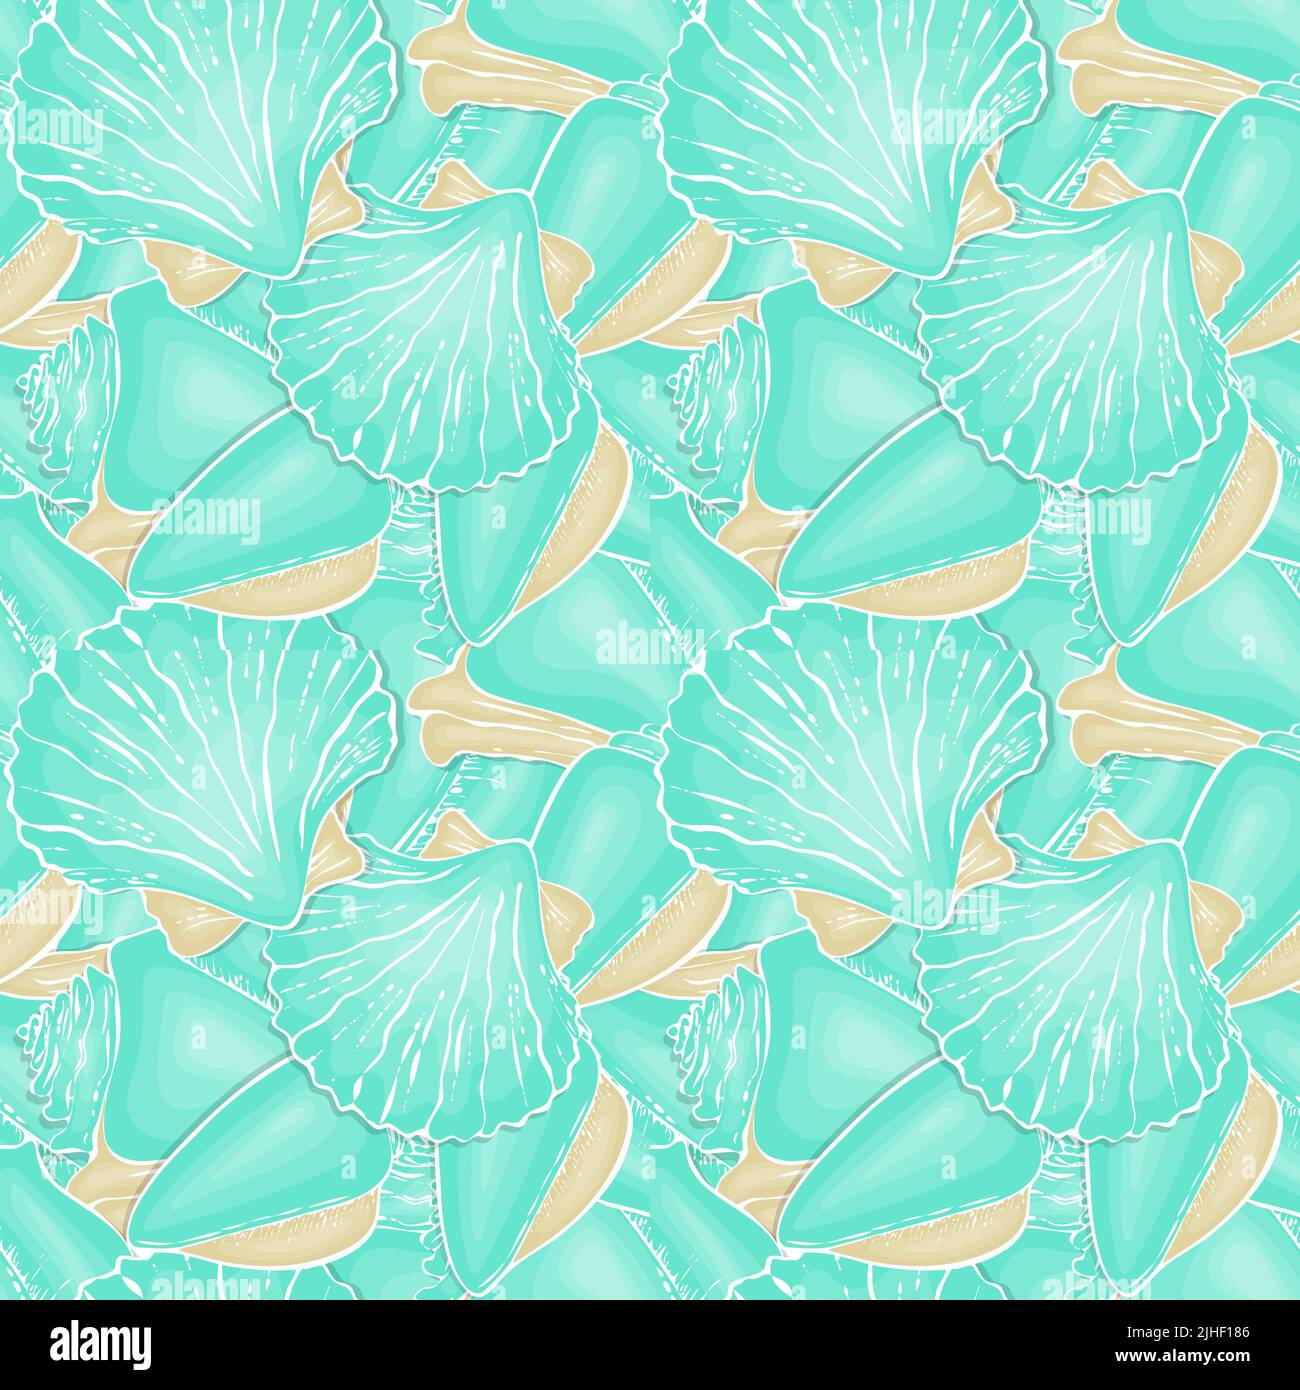 Motif Seashell dessin de nouilles dessinées à la main, tons pastel bleu et beige. Illustration vectorielle Illustration de Vecteur